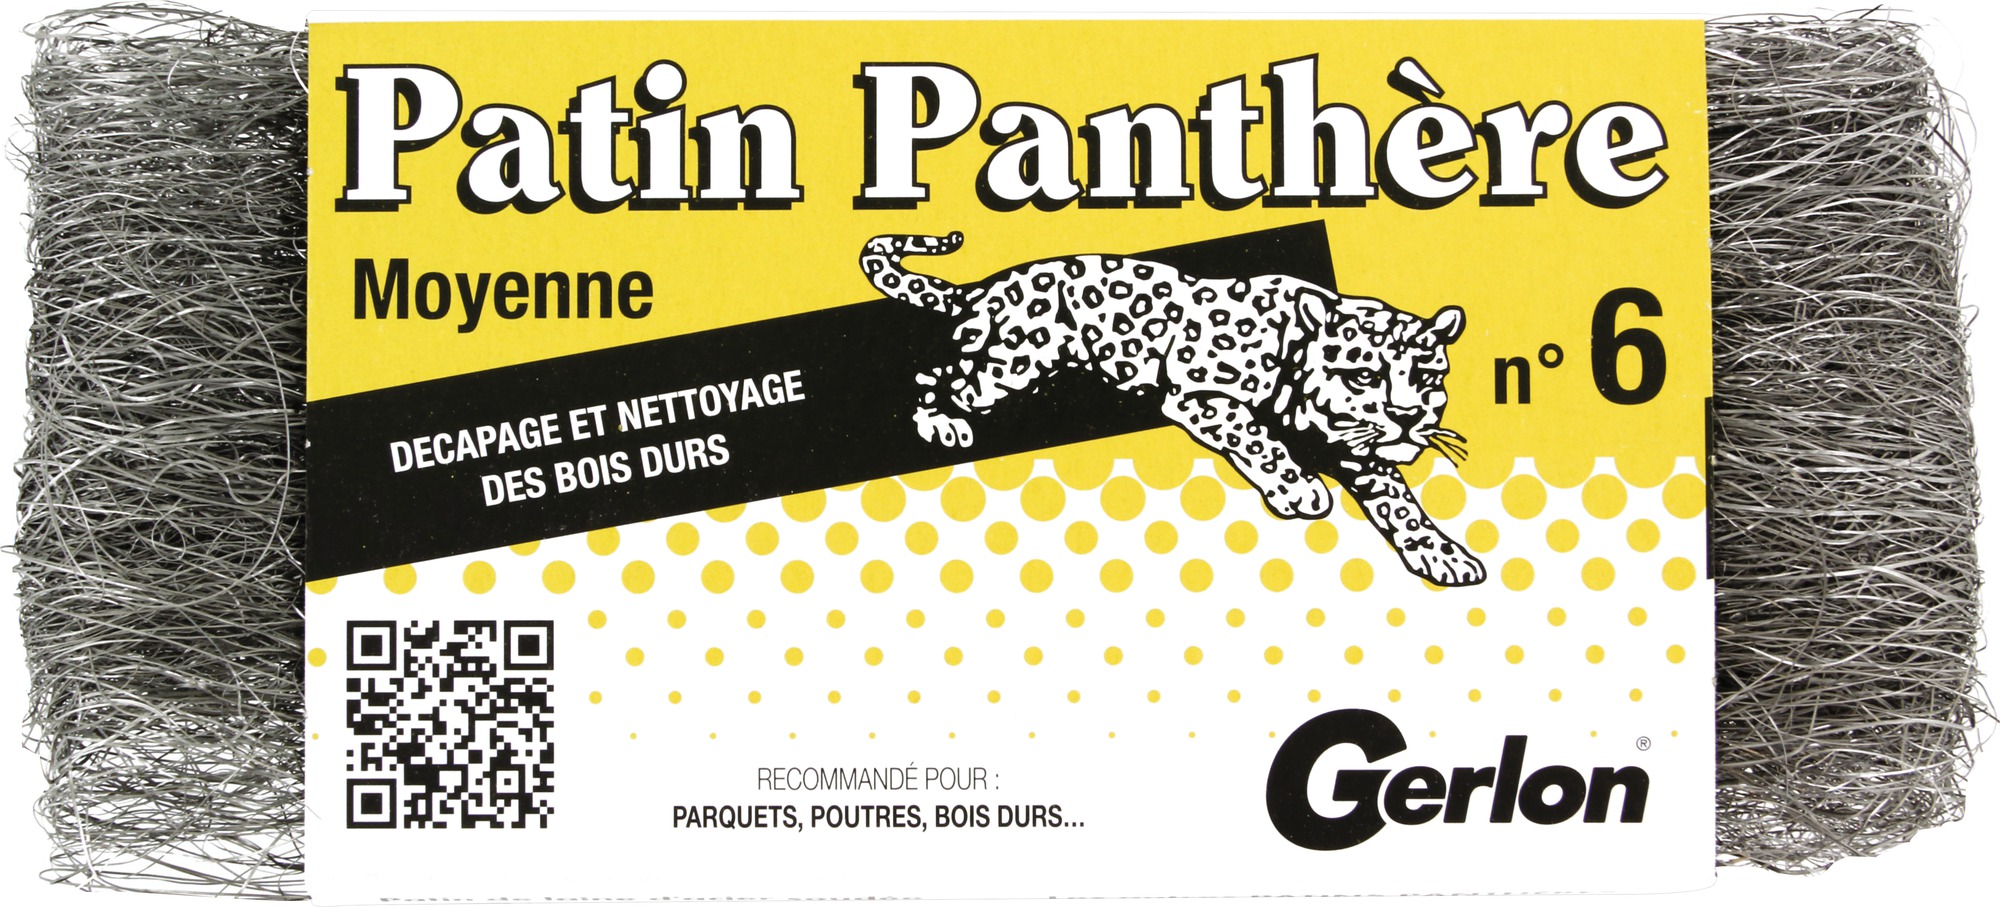 Patin panthère Gerlon - n°6